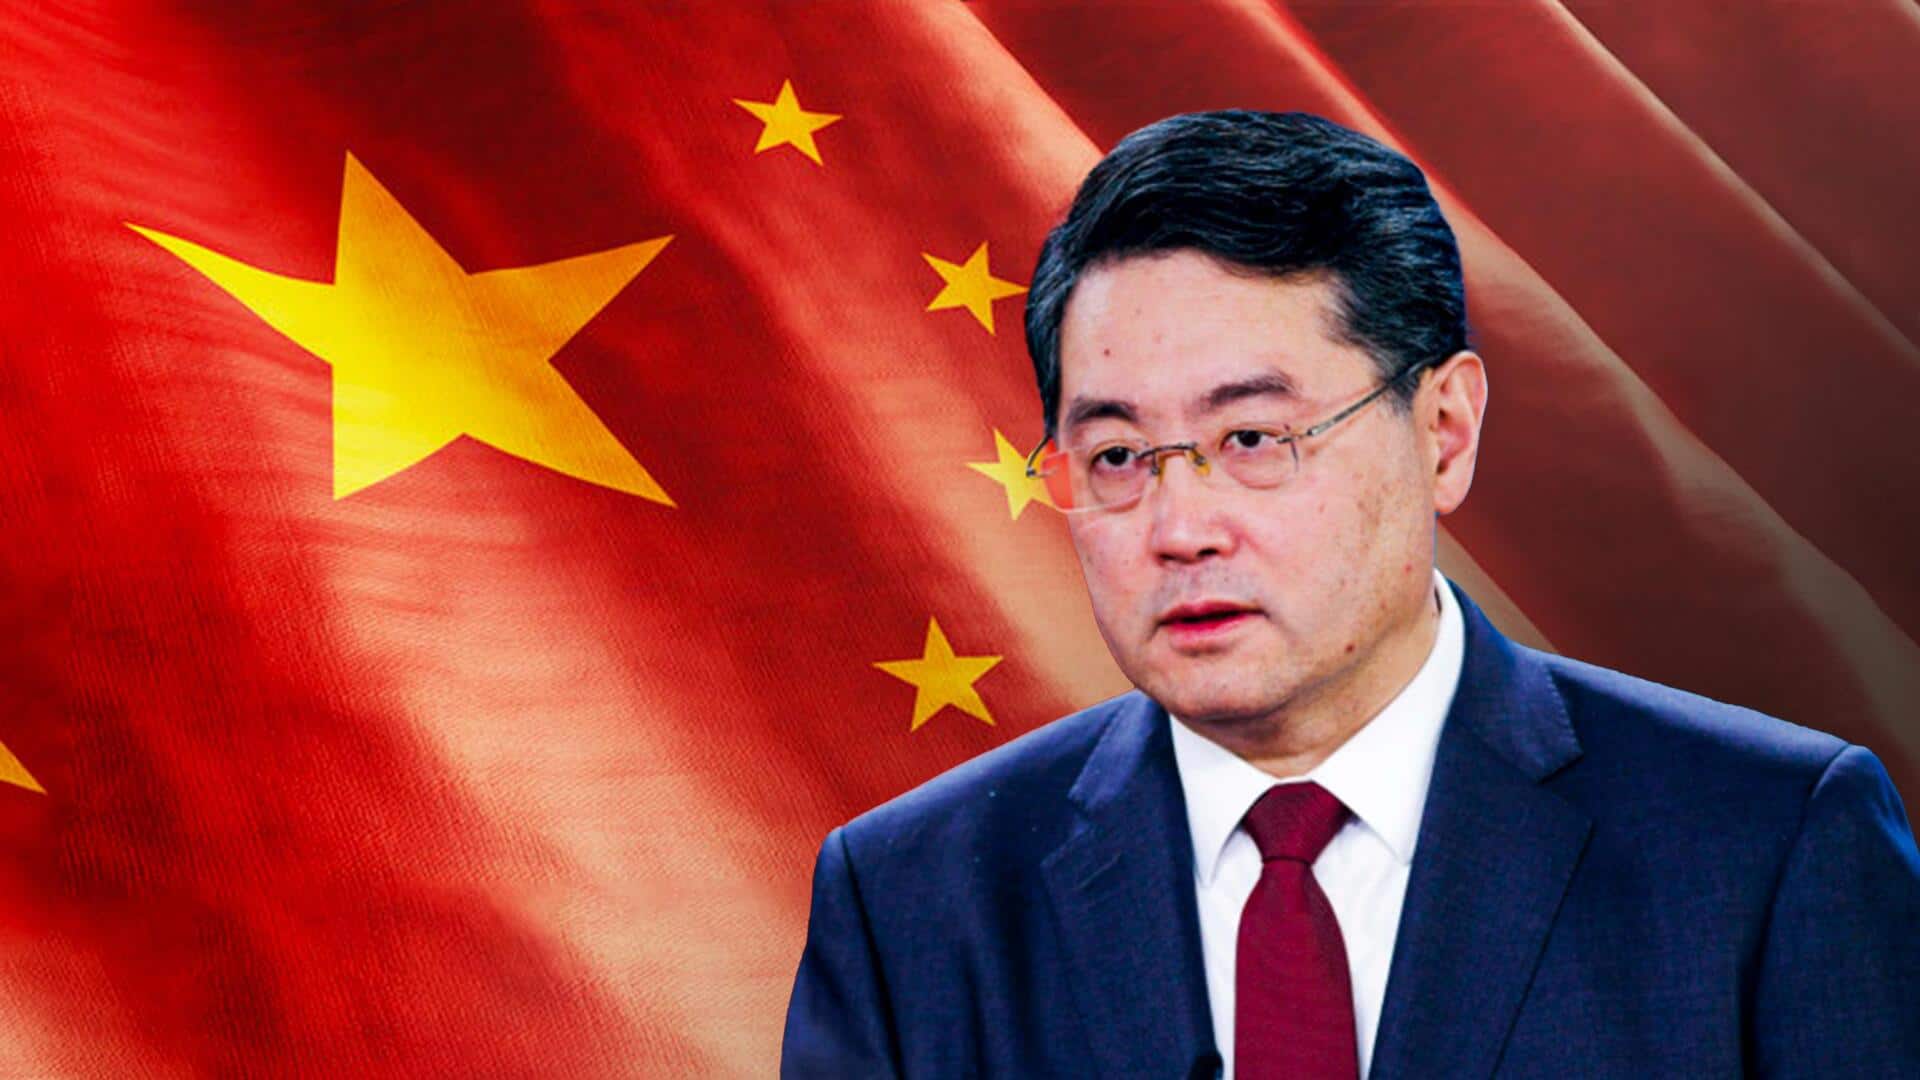 क्या चीनी राष्ट्रपति ने ही अपने विदेश मंत्री को मरवाया? जानें रिपोर्ट में क्या-क्या सामने आया